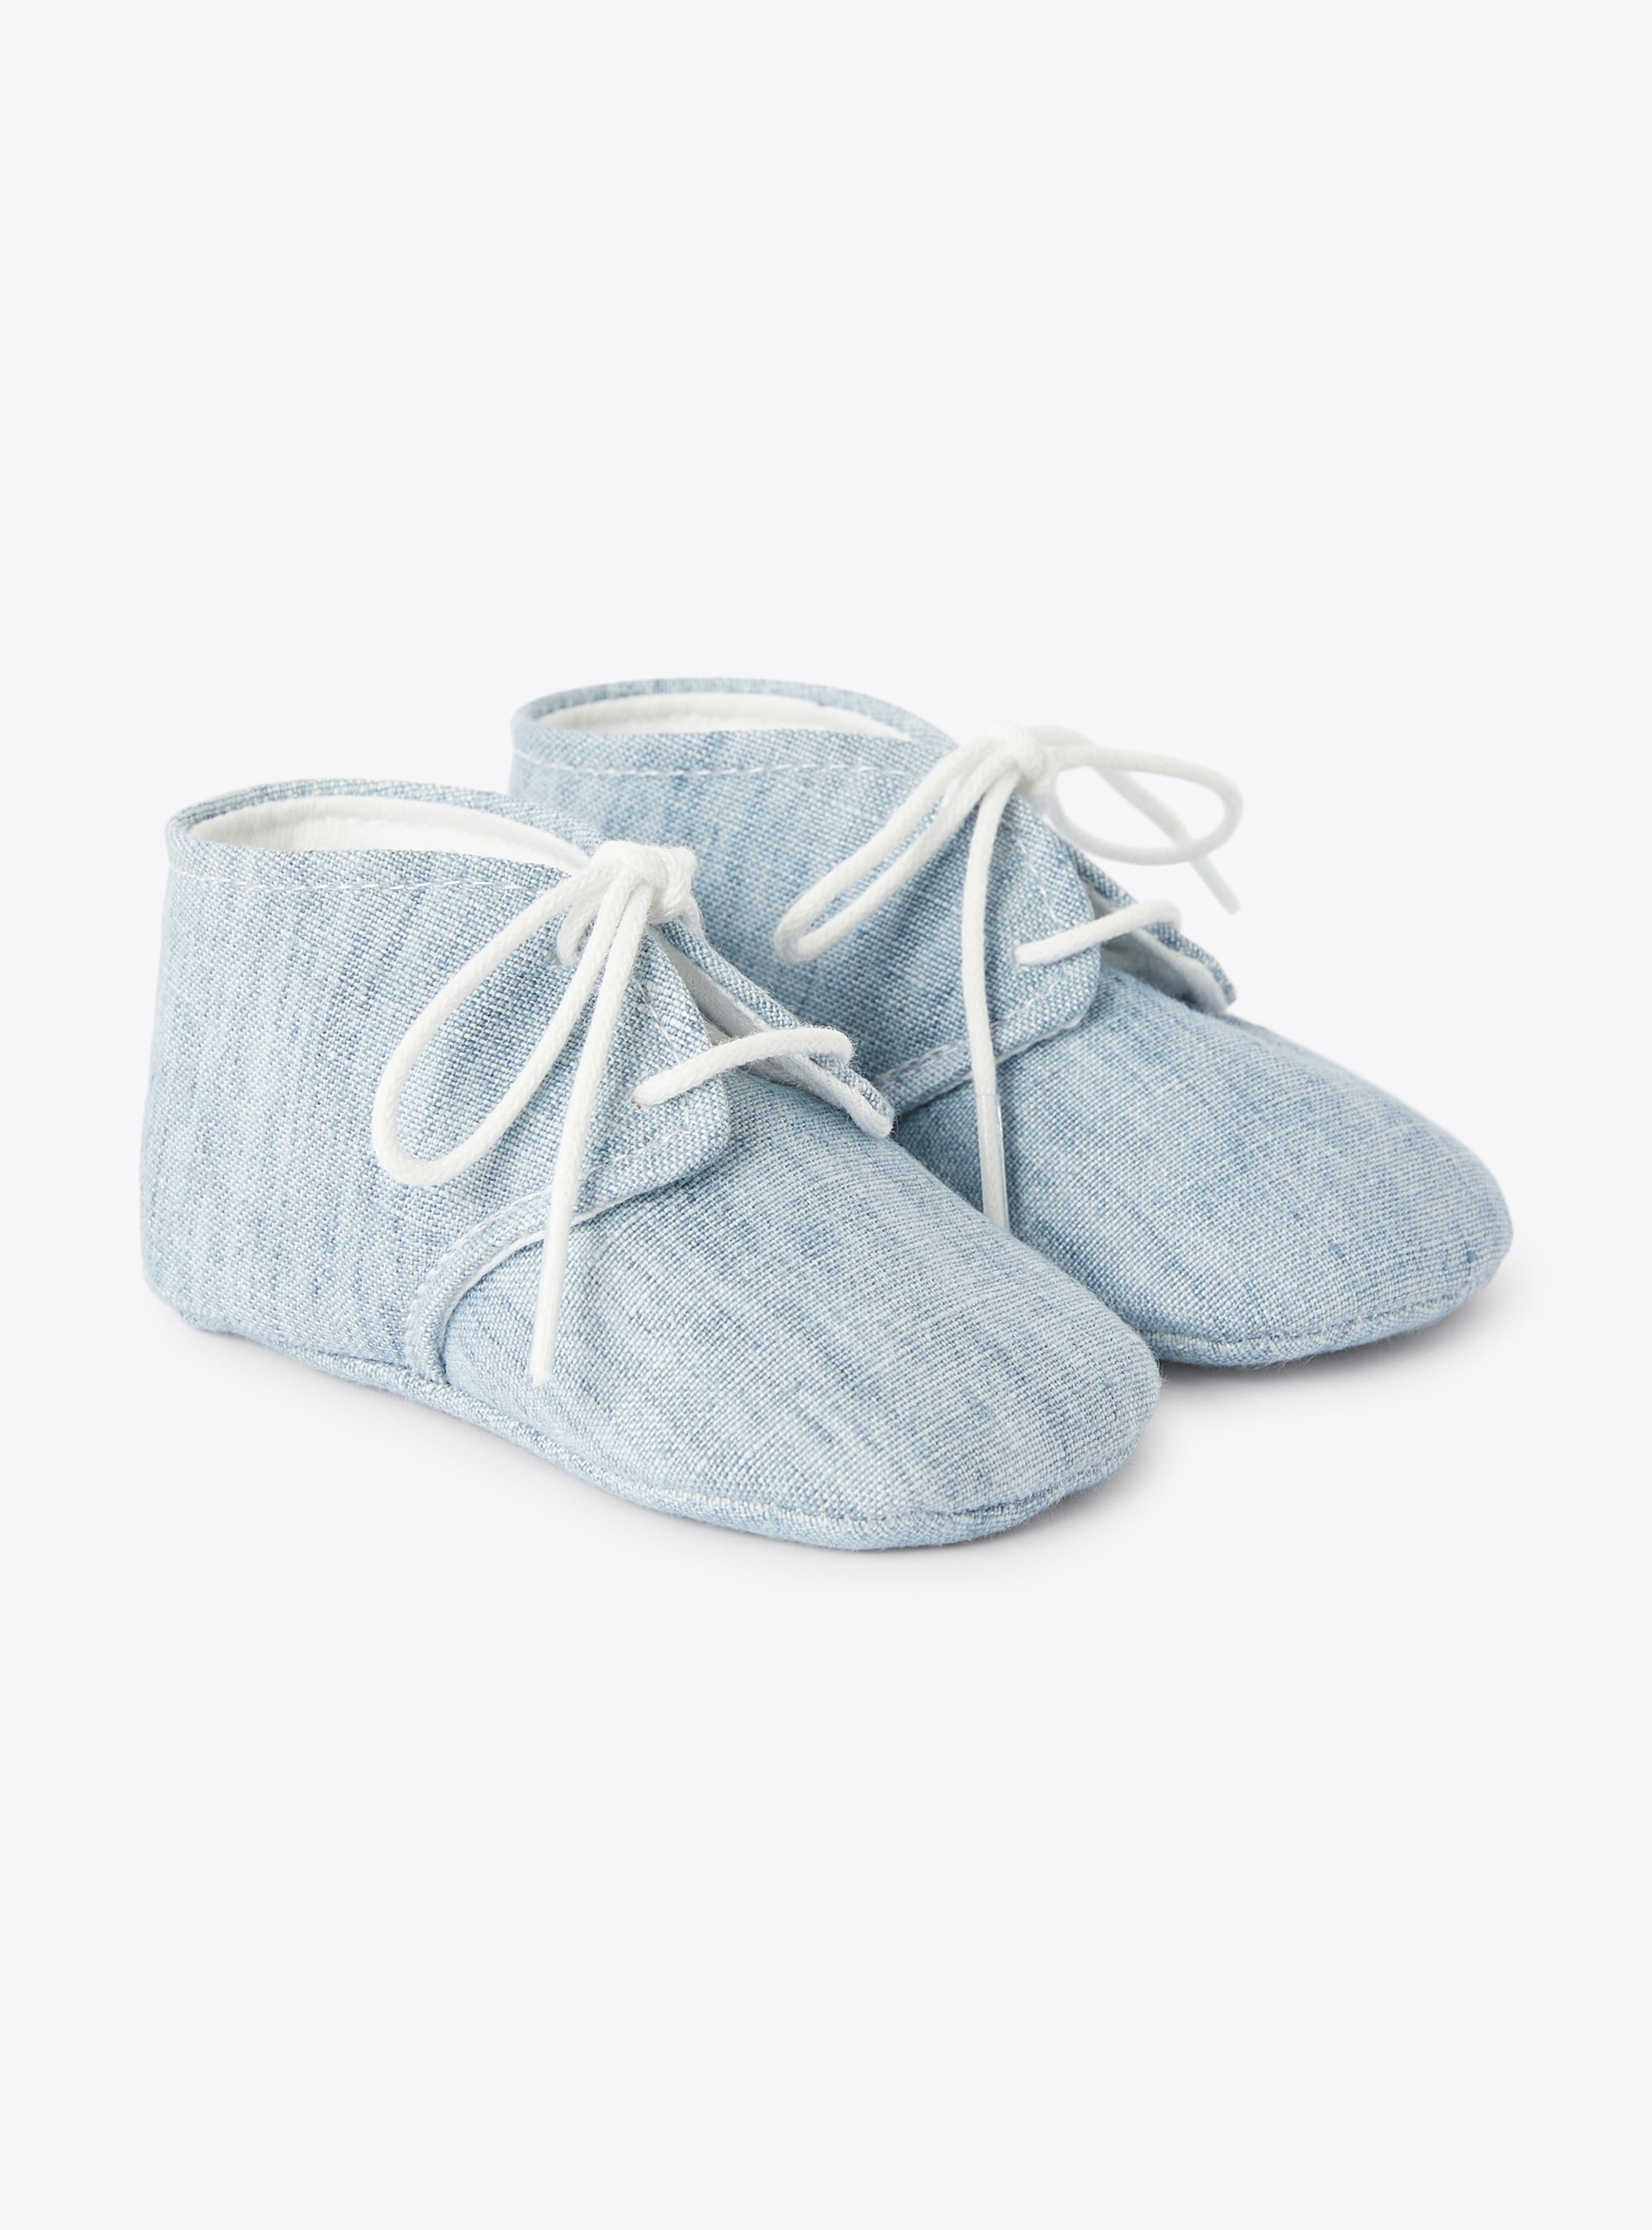 Chaussures pour bébé garçon en lin bleu ciel - Chaussures - Il Gufo